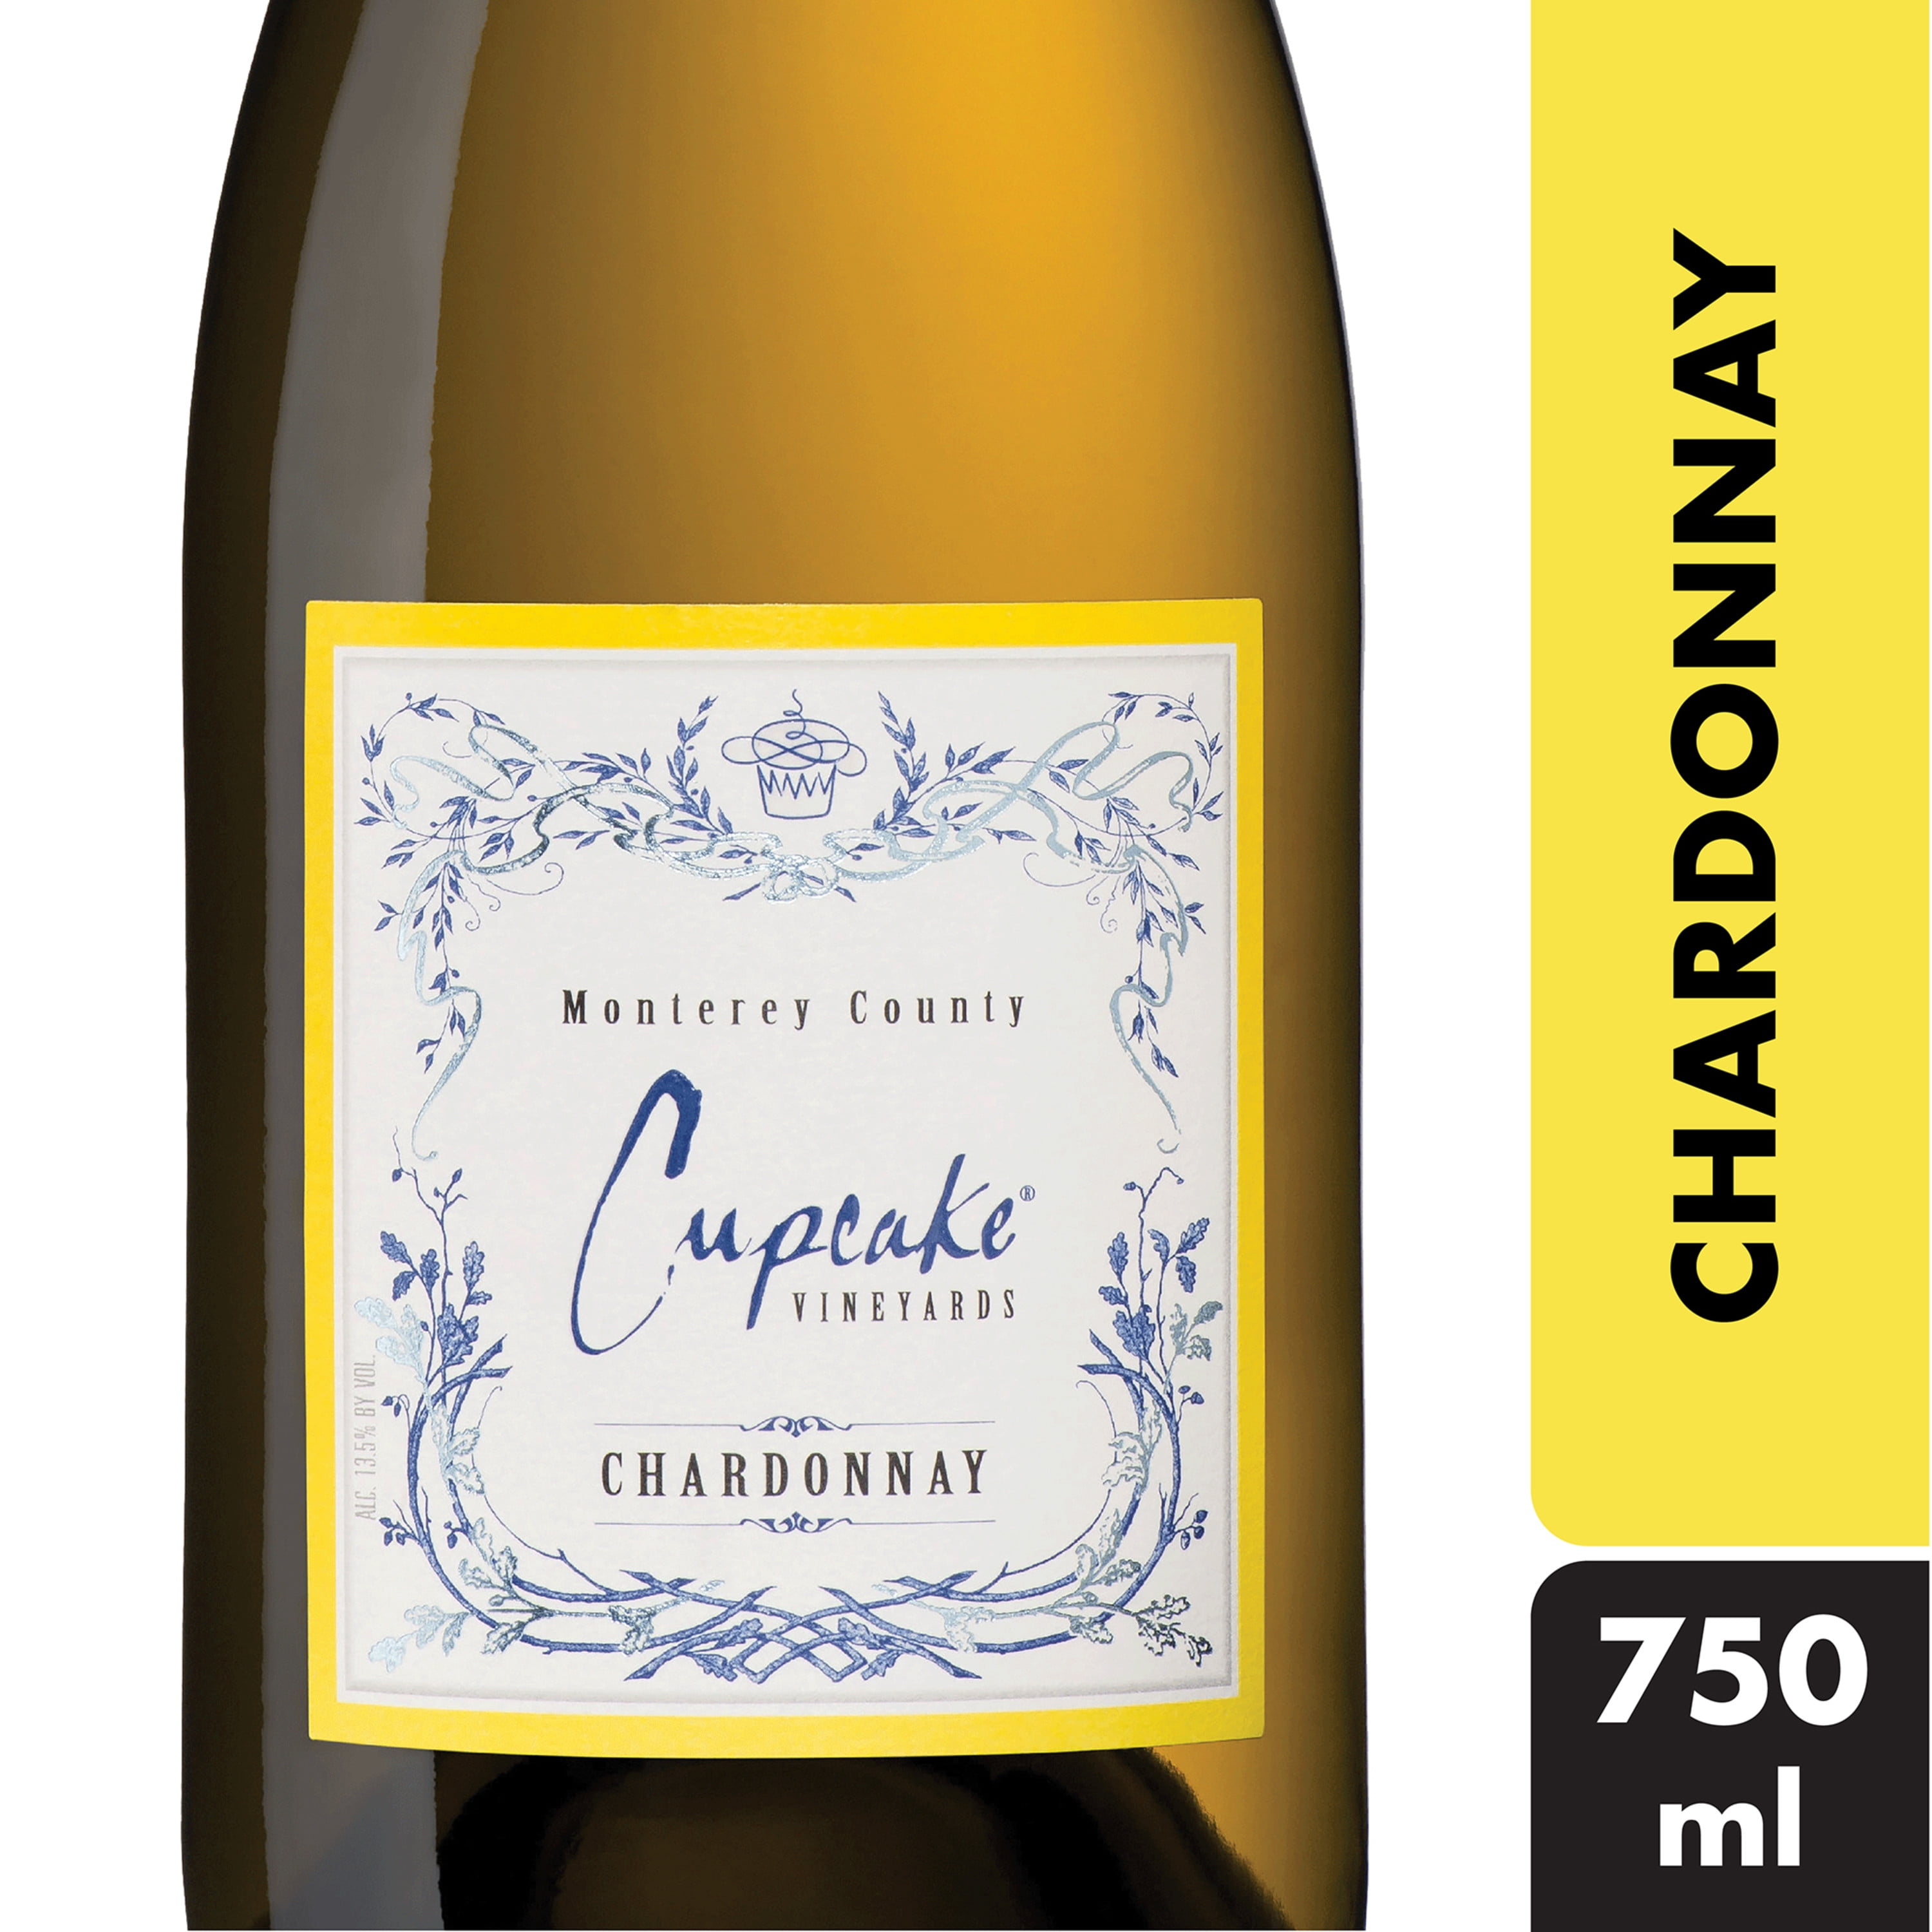 cupcake-vineyards-chardonnay-white-wine-750ml-2018-monterey-county